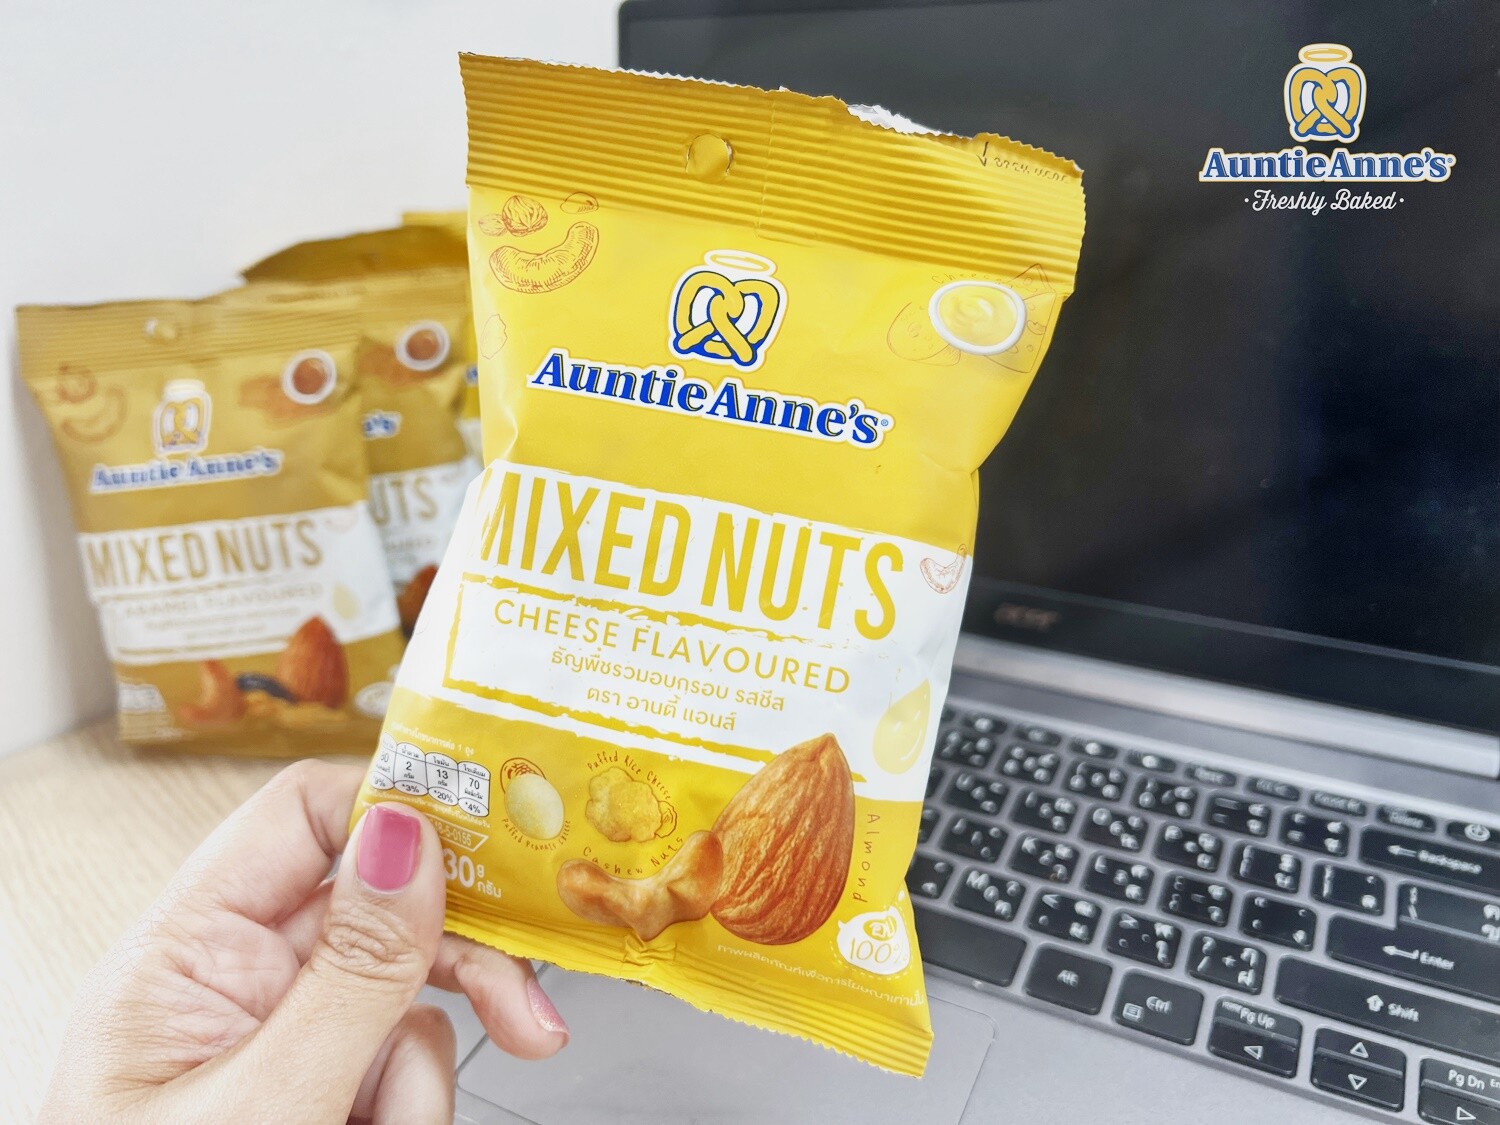 อานตี้ แอนส์ ต่อยอดผลิตภัณฑ์ Grab&Go ส่งสินค้าใหม่ "Mixed Nuts" บุกตลาดสแน็ค